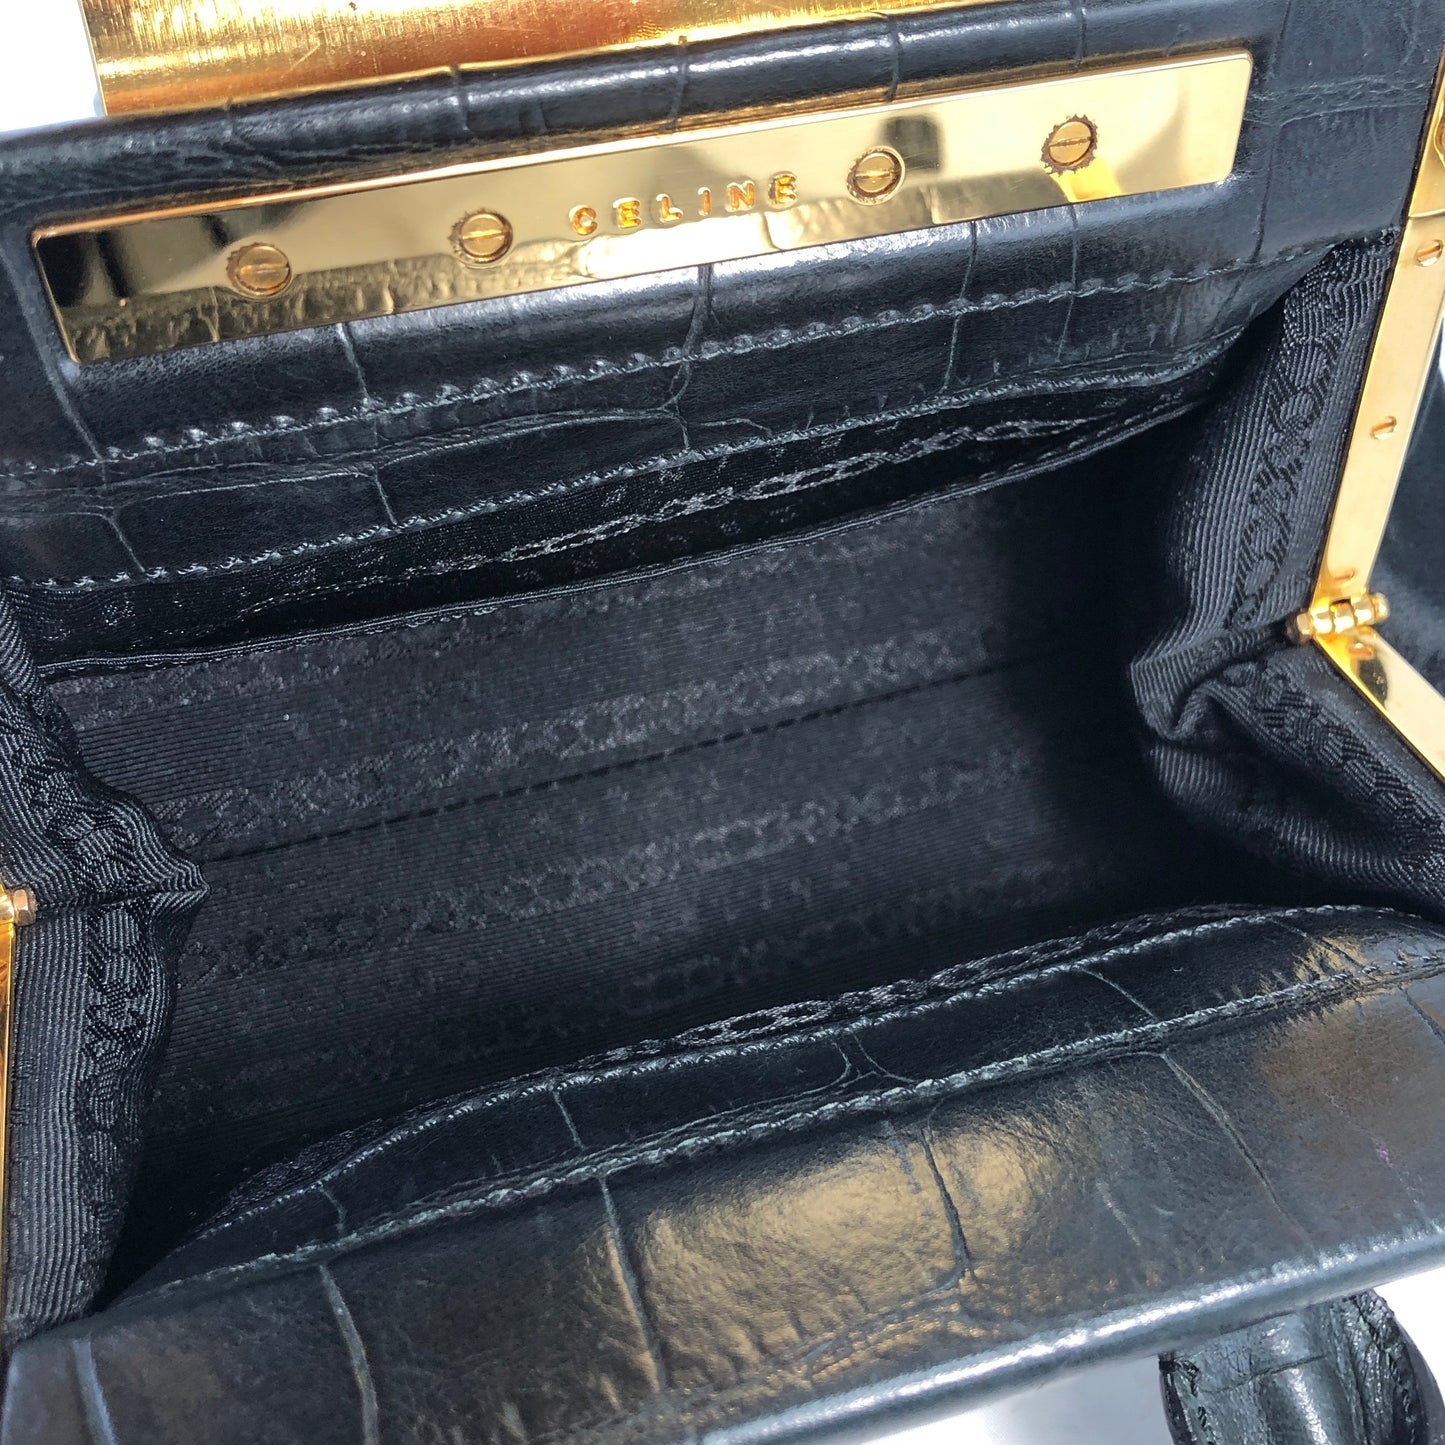 CELINE Triomphe Crocodile embossed Satin Clasp Handbag Black Vintage Old CELINE whwc45